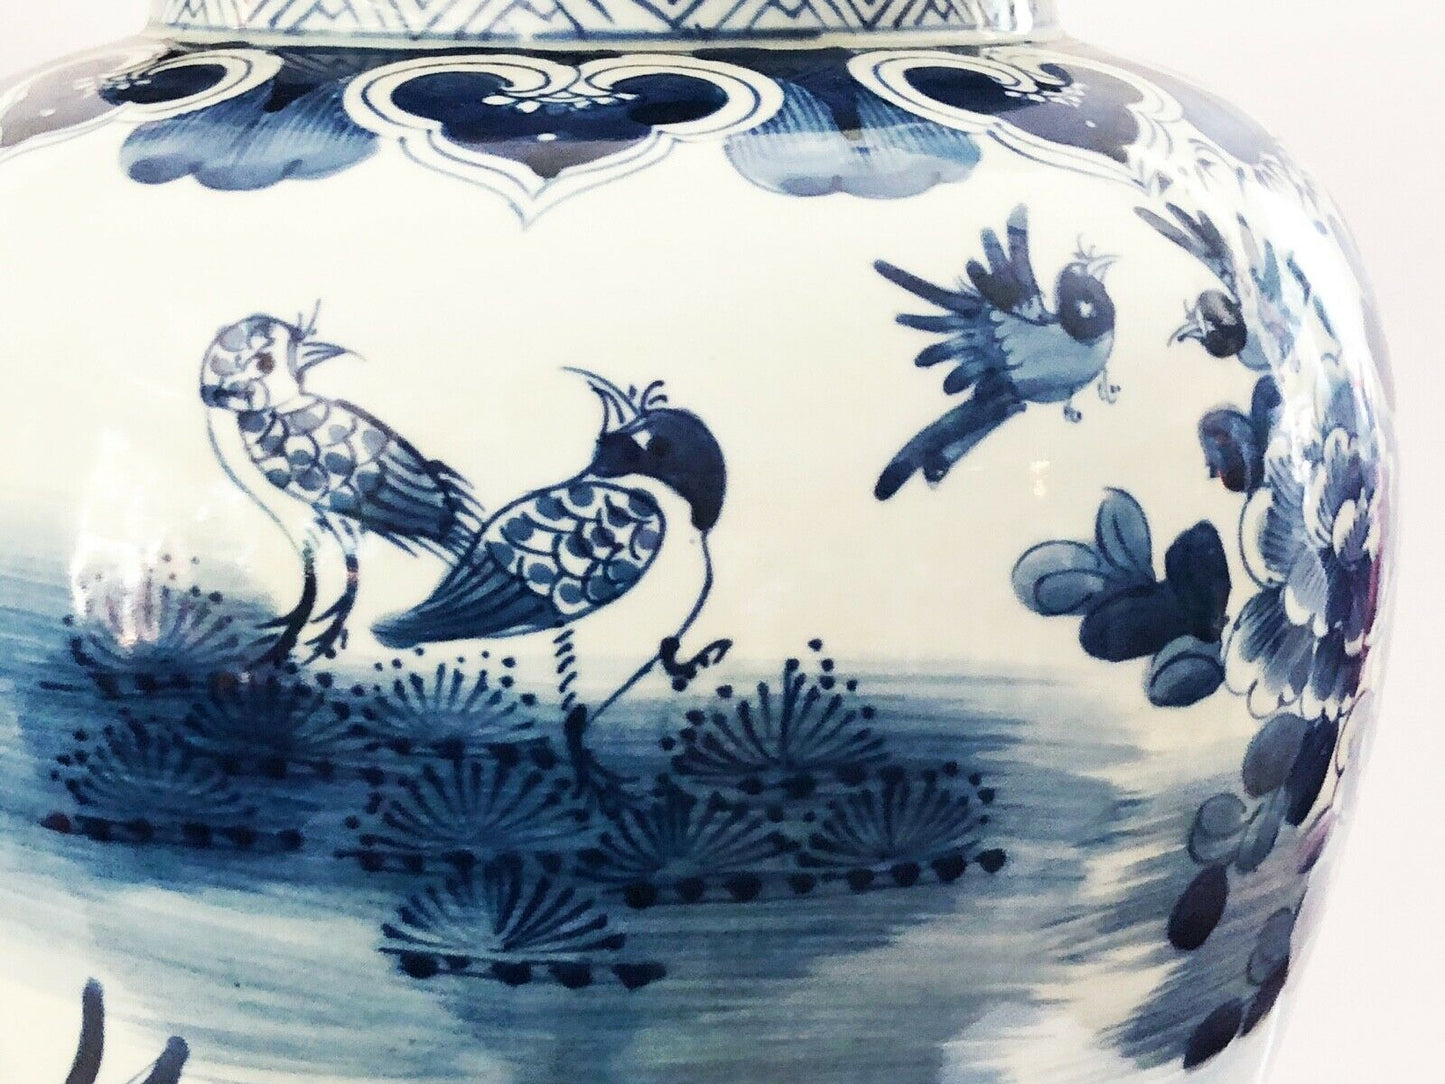 #281 Lg Chinoiserie Blue & White Porcelain Ginger Jars, 19" H